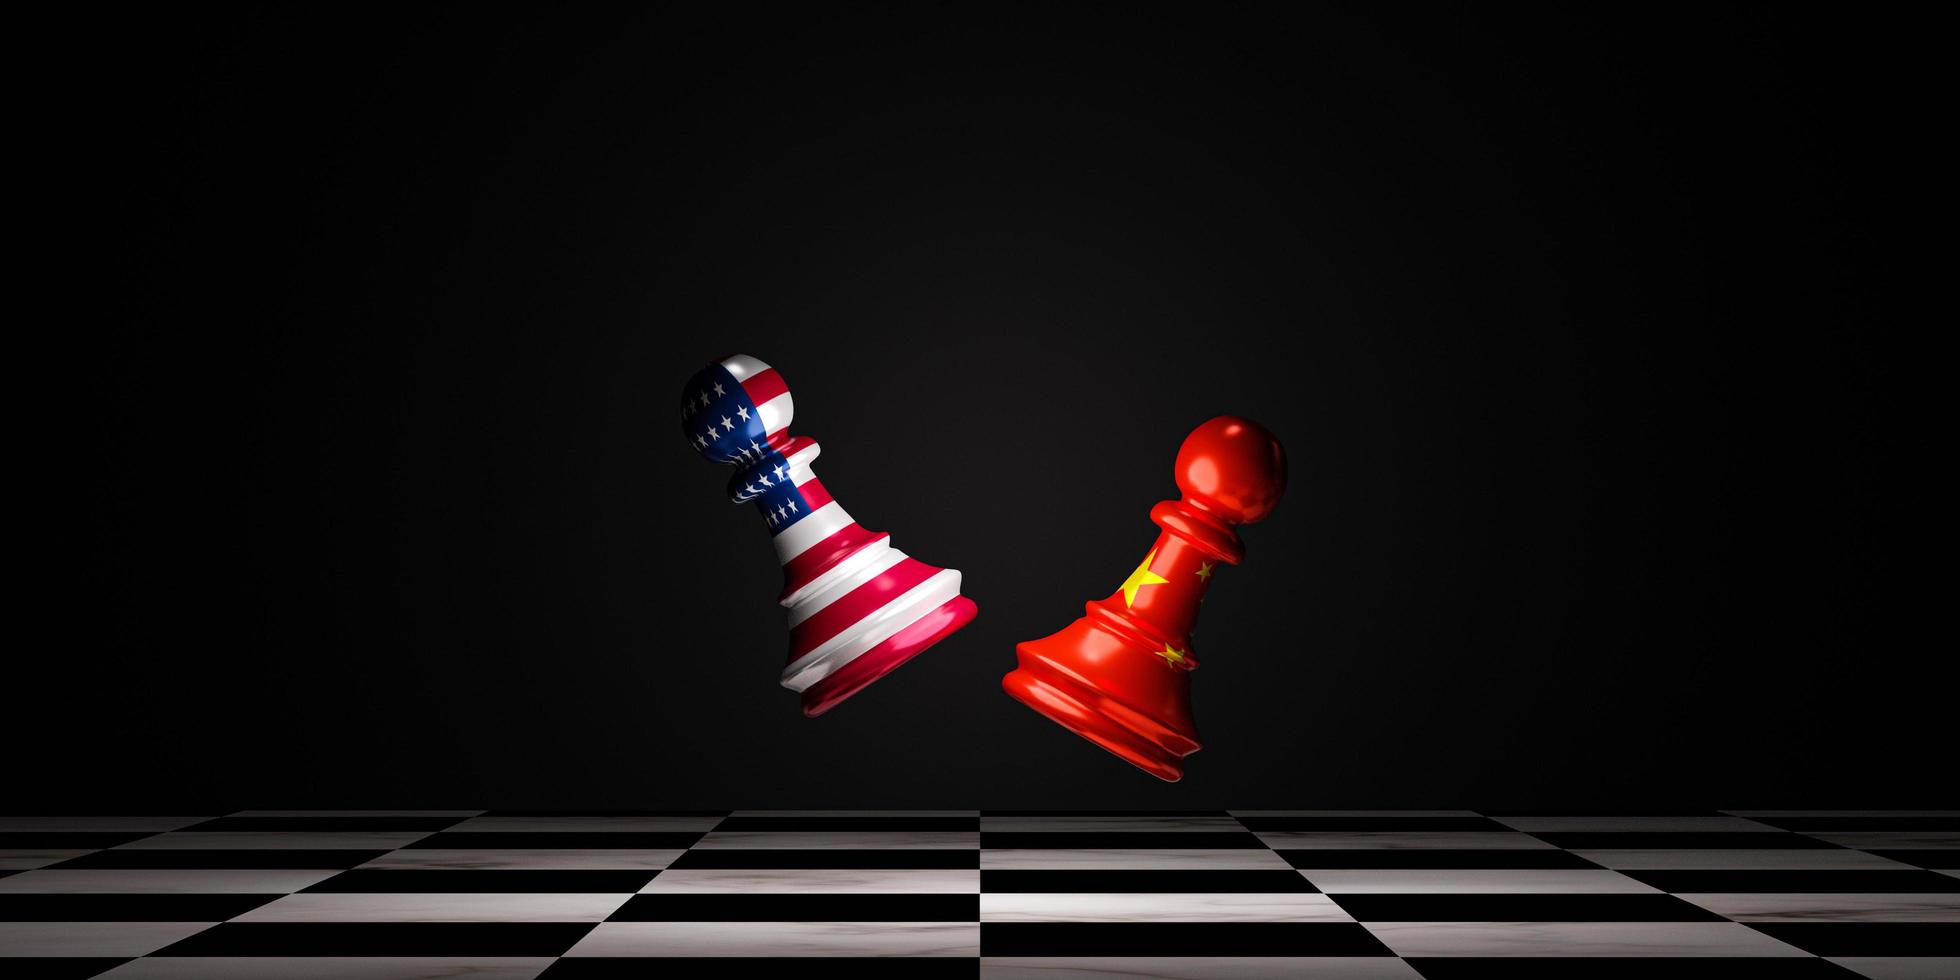 battaglia tra gli scacchi degli Stati Uniti e la Cina scacchi sulla scacchiera per la guerra militare e commerciale, gli Stati Uniti d'America e la Cina hanno molti concorrenti per ottenere la leadership con il rendering 3D. foto